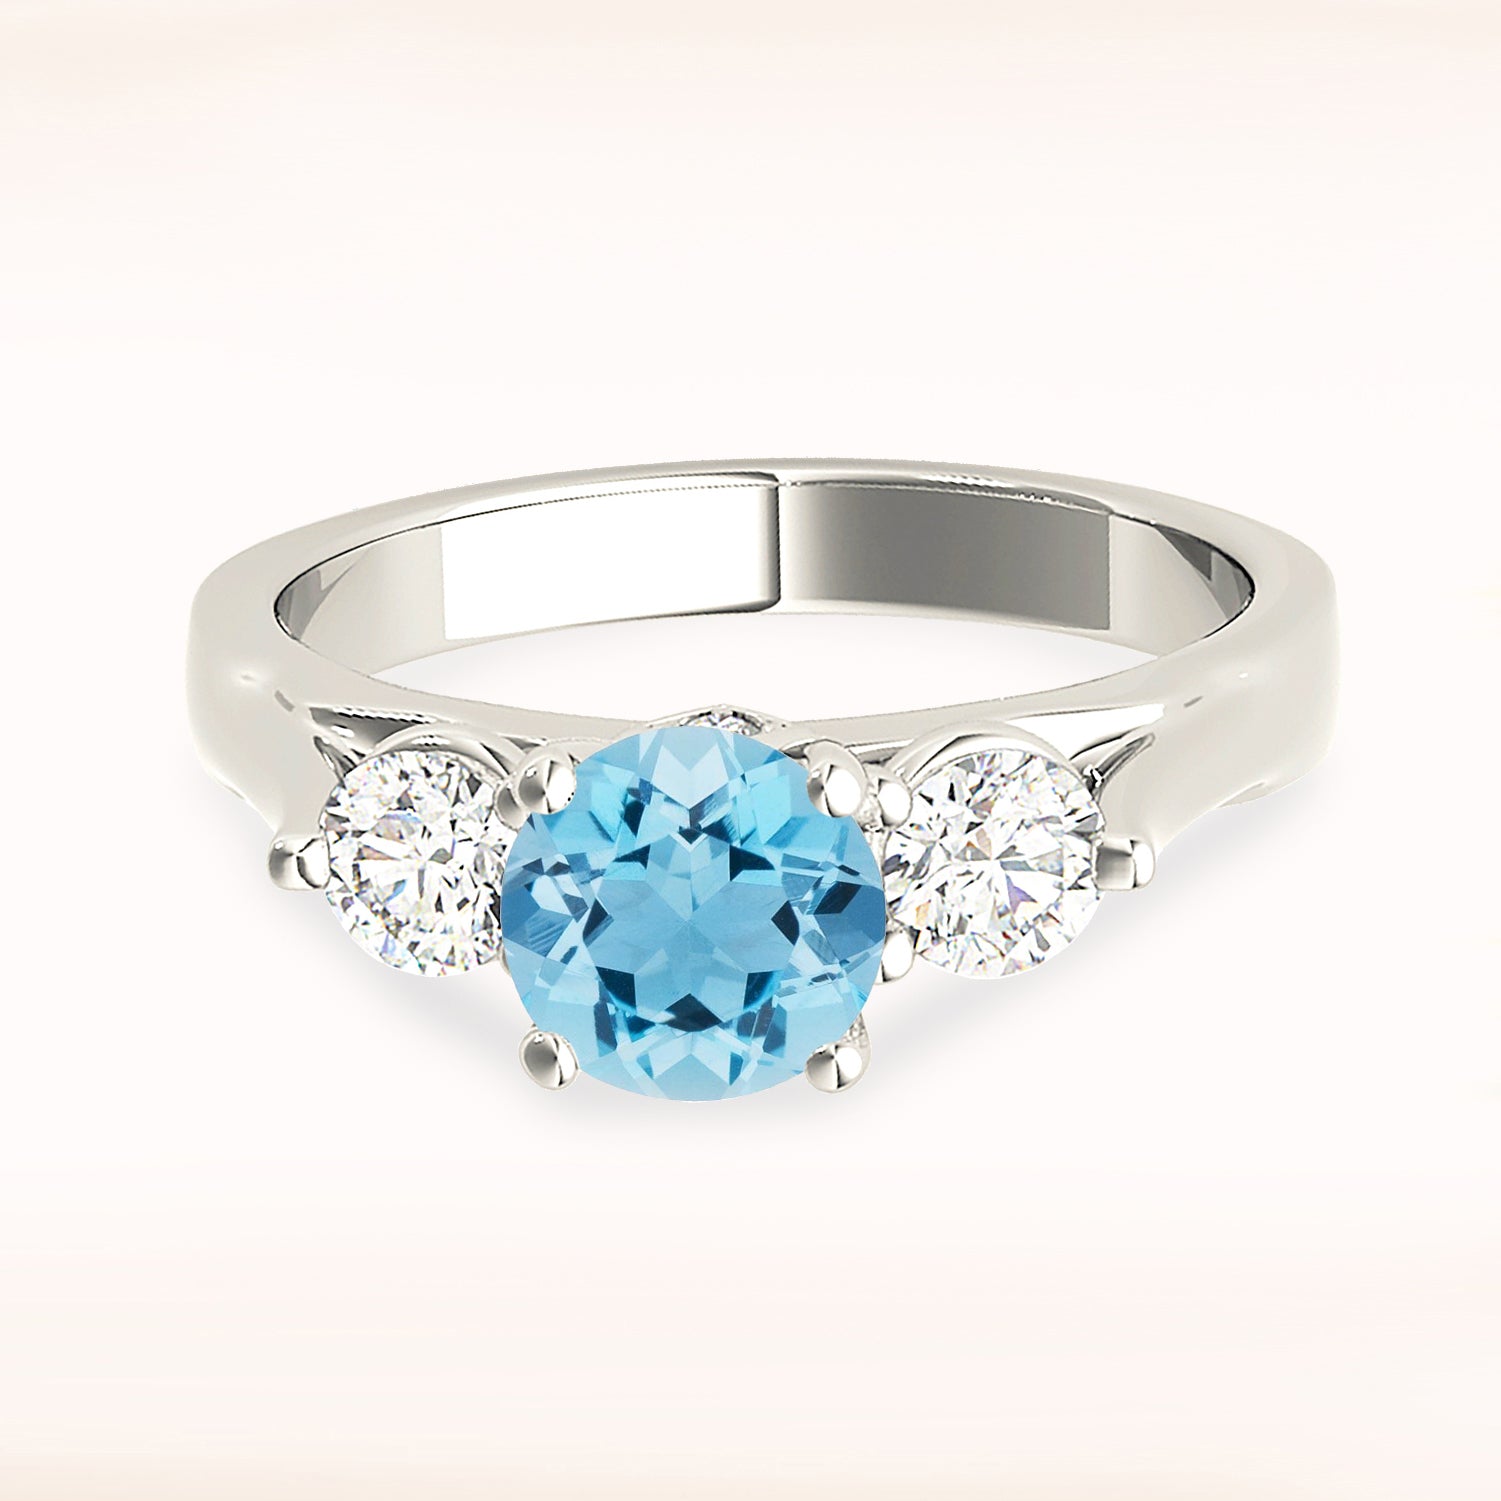 1.10 ct. Genuine Aquamarine Three Stone Ring with 0.40 ctw. Side Diamonds-in 14K/18K White, Yellow, Rose Gold and Platinum - Christmas Jewelry Gift -VIRABYANI